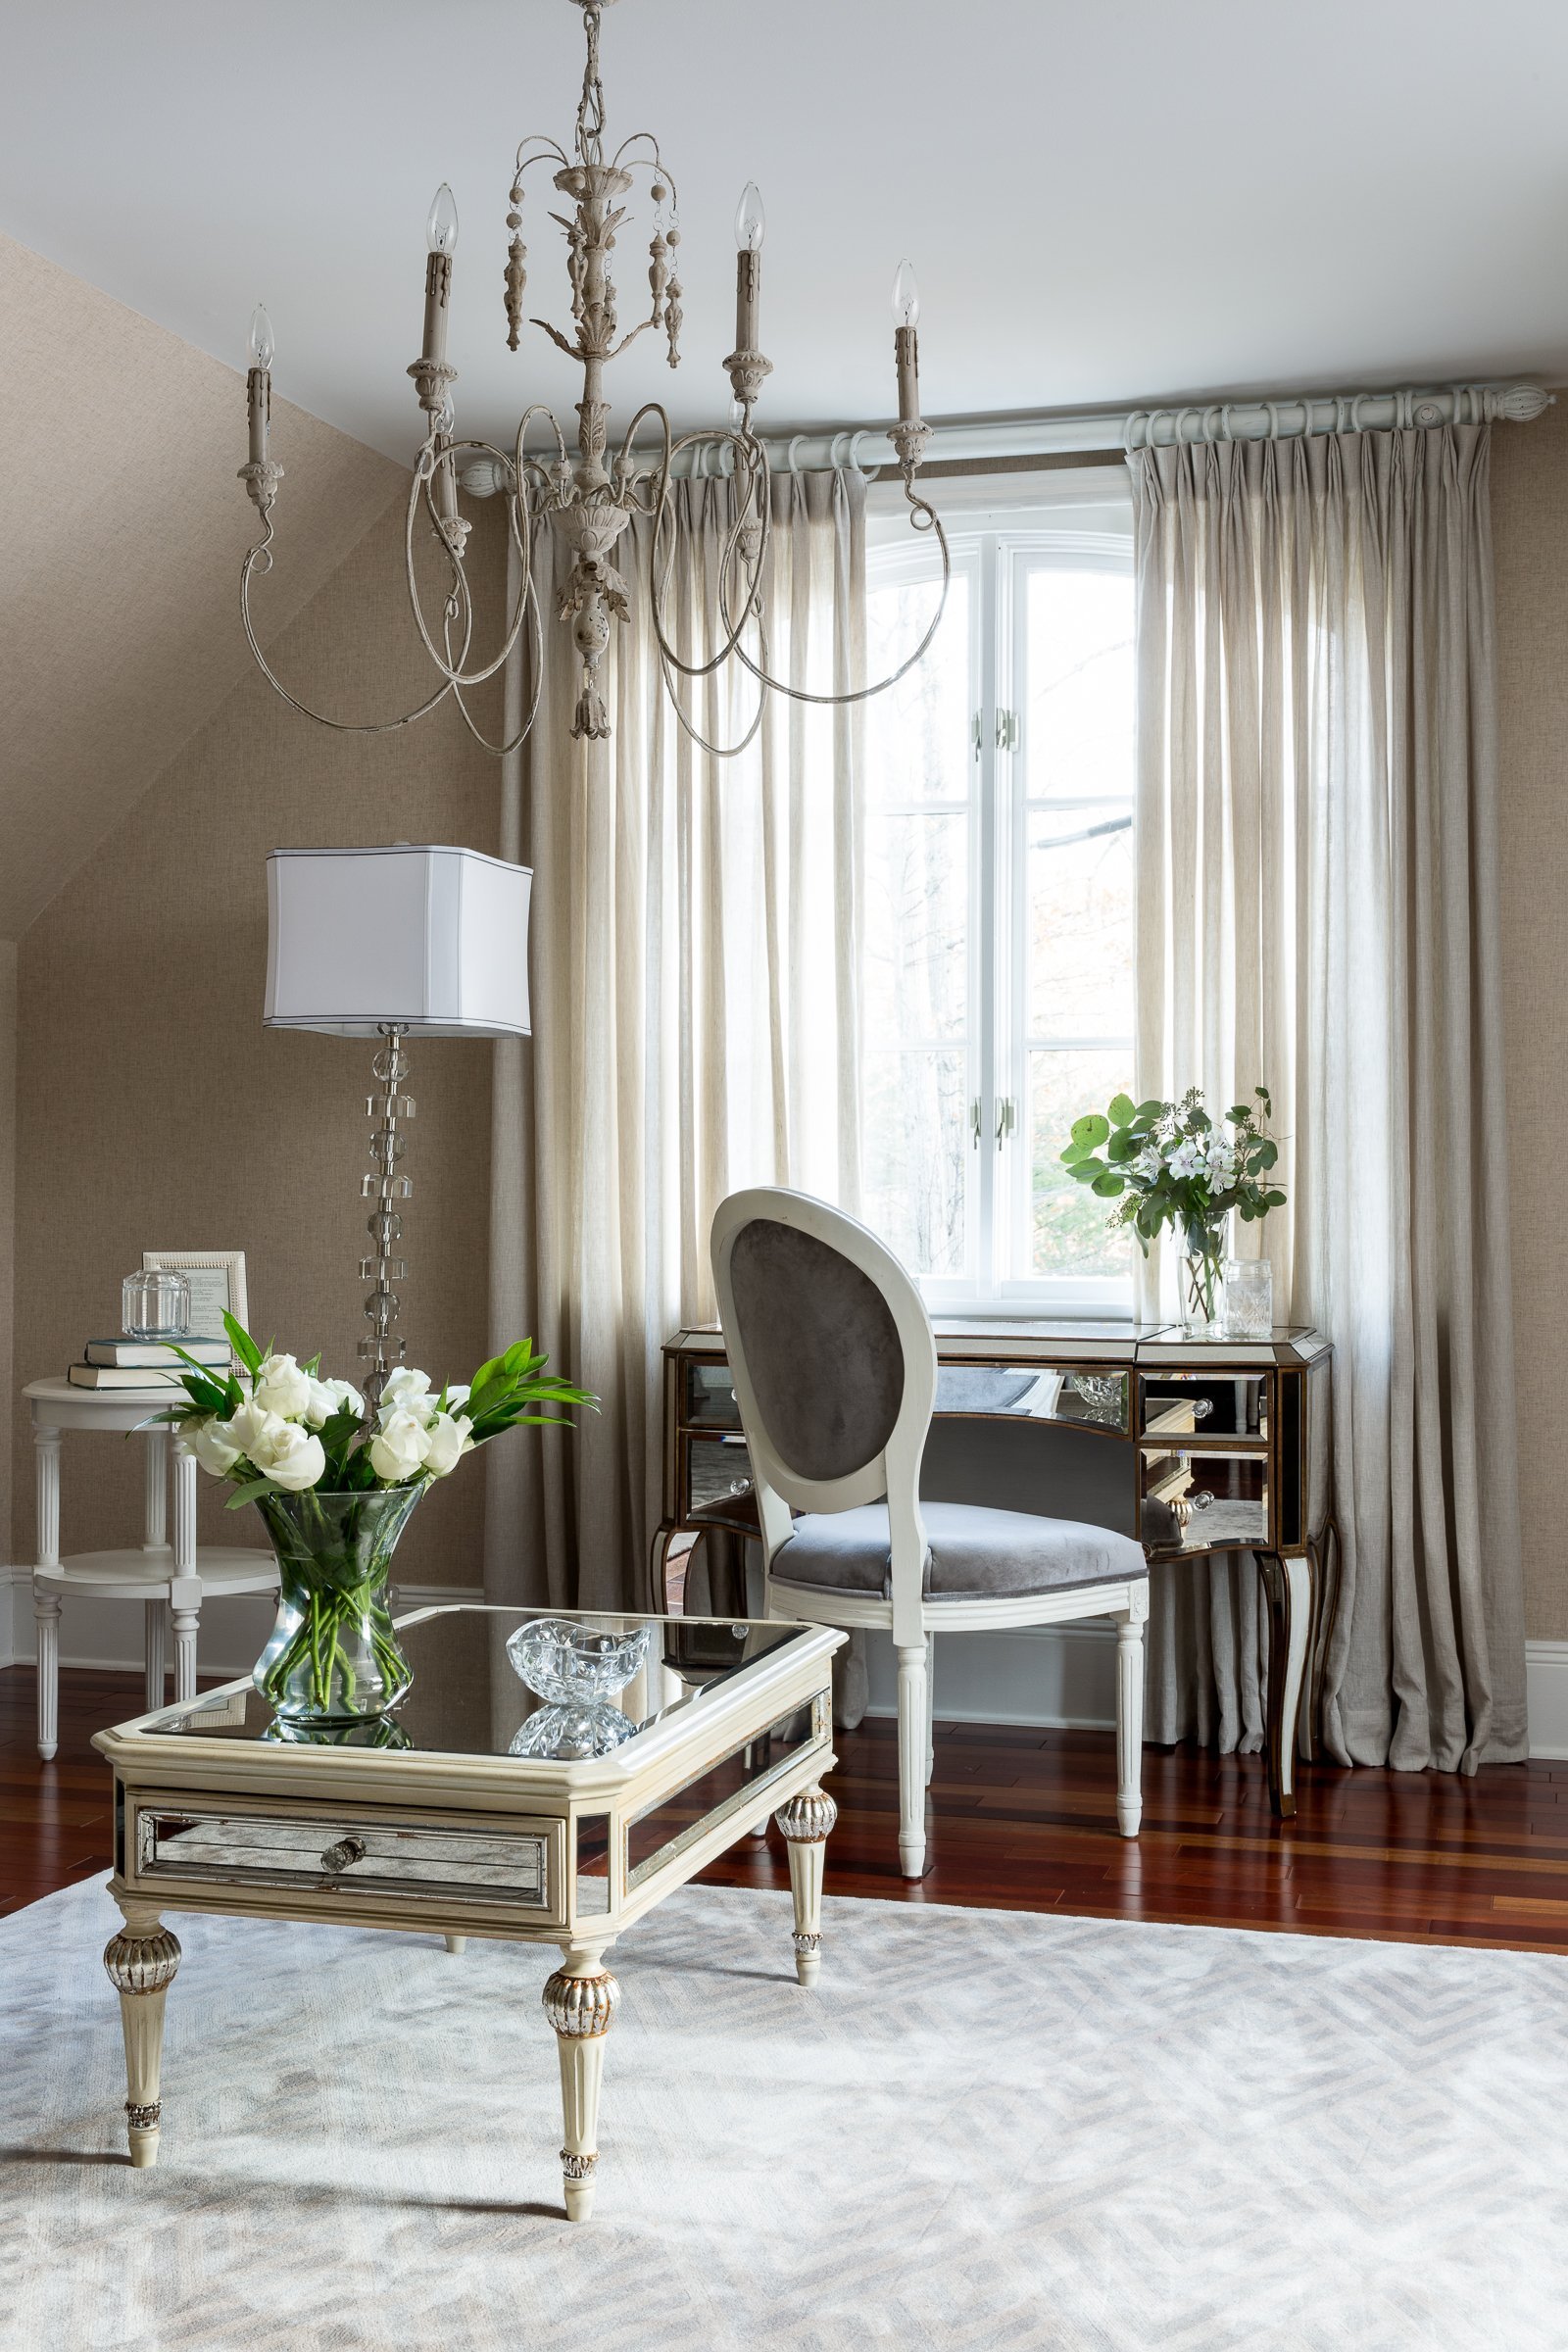 elegant vanity table in window area by KNOF design